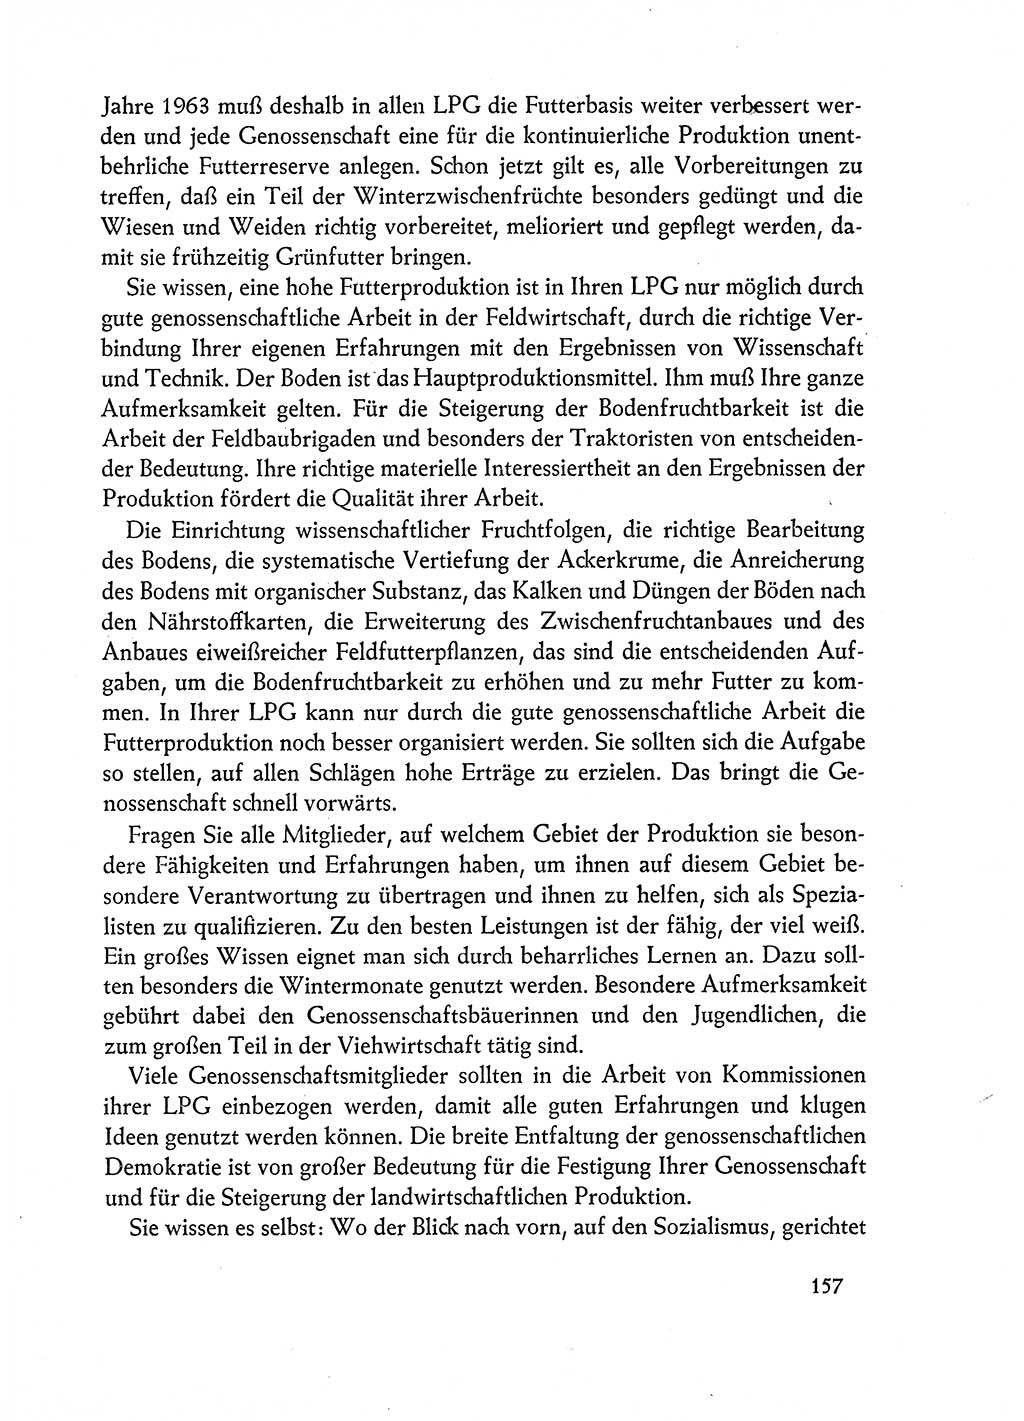 Dokumente der Sozialistischen Einheitspartei Deutschlands (SED) [Deutsche Demokratische Republik (DDR)] 1962-1963, Seite 157 (Dok. SED DDR 1962-1963, S. 157)